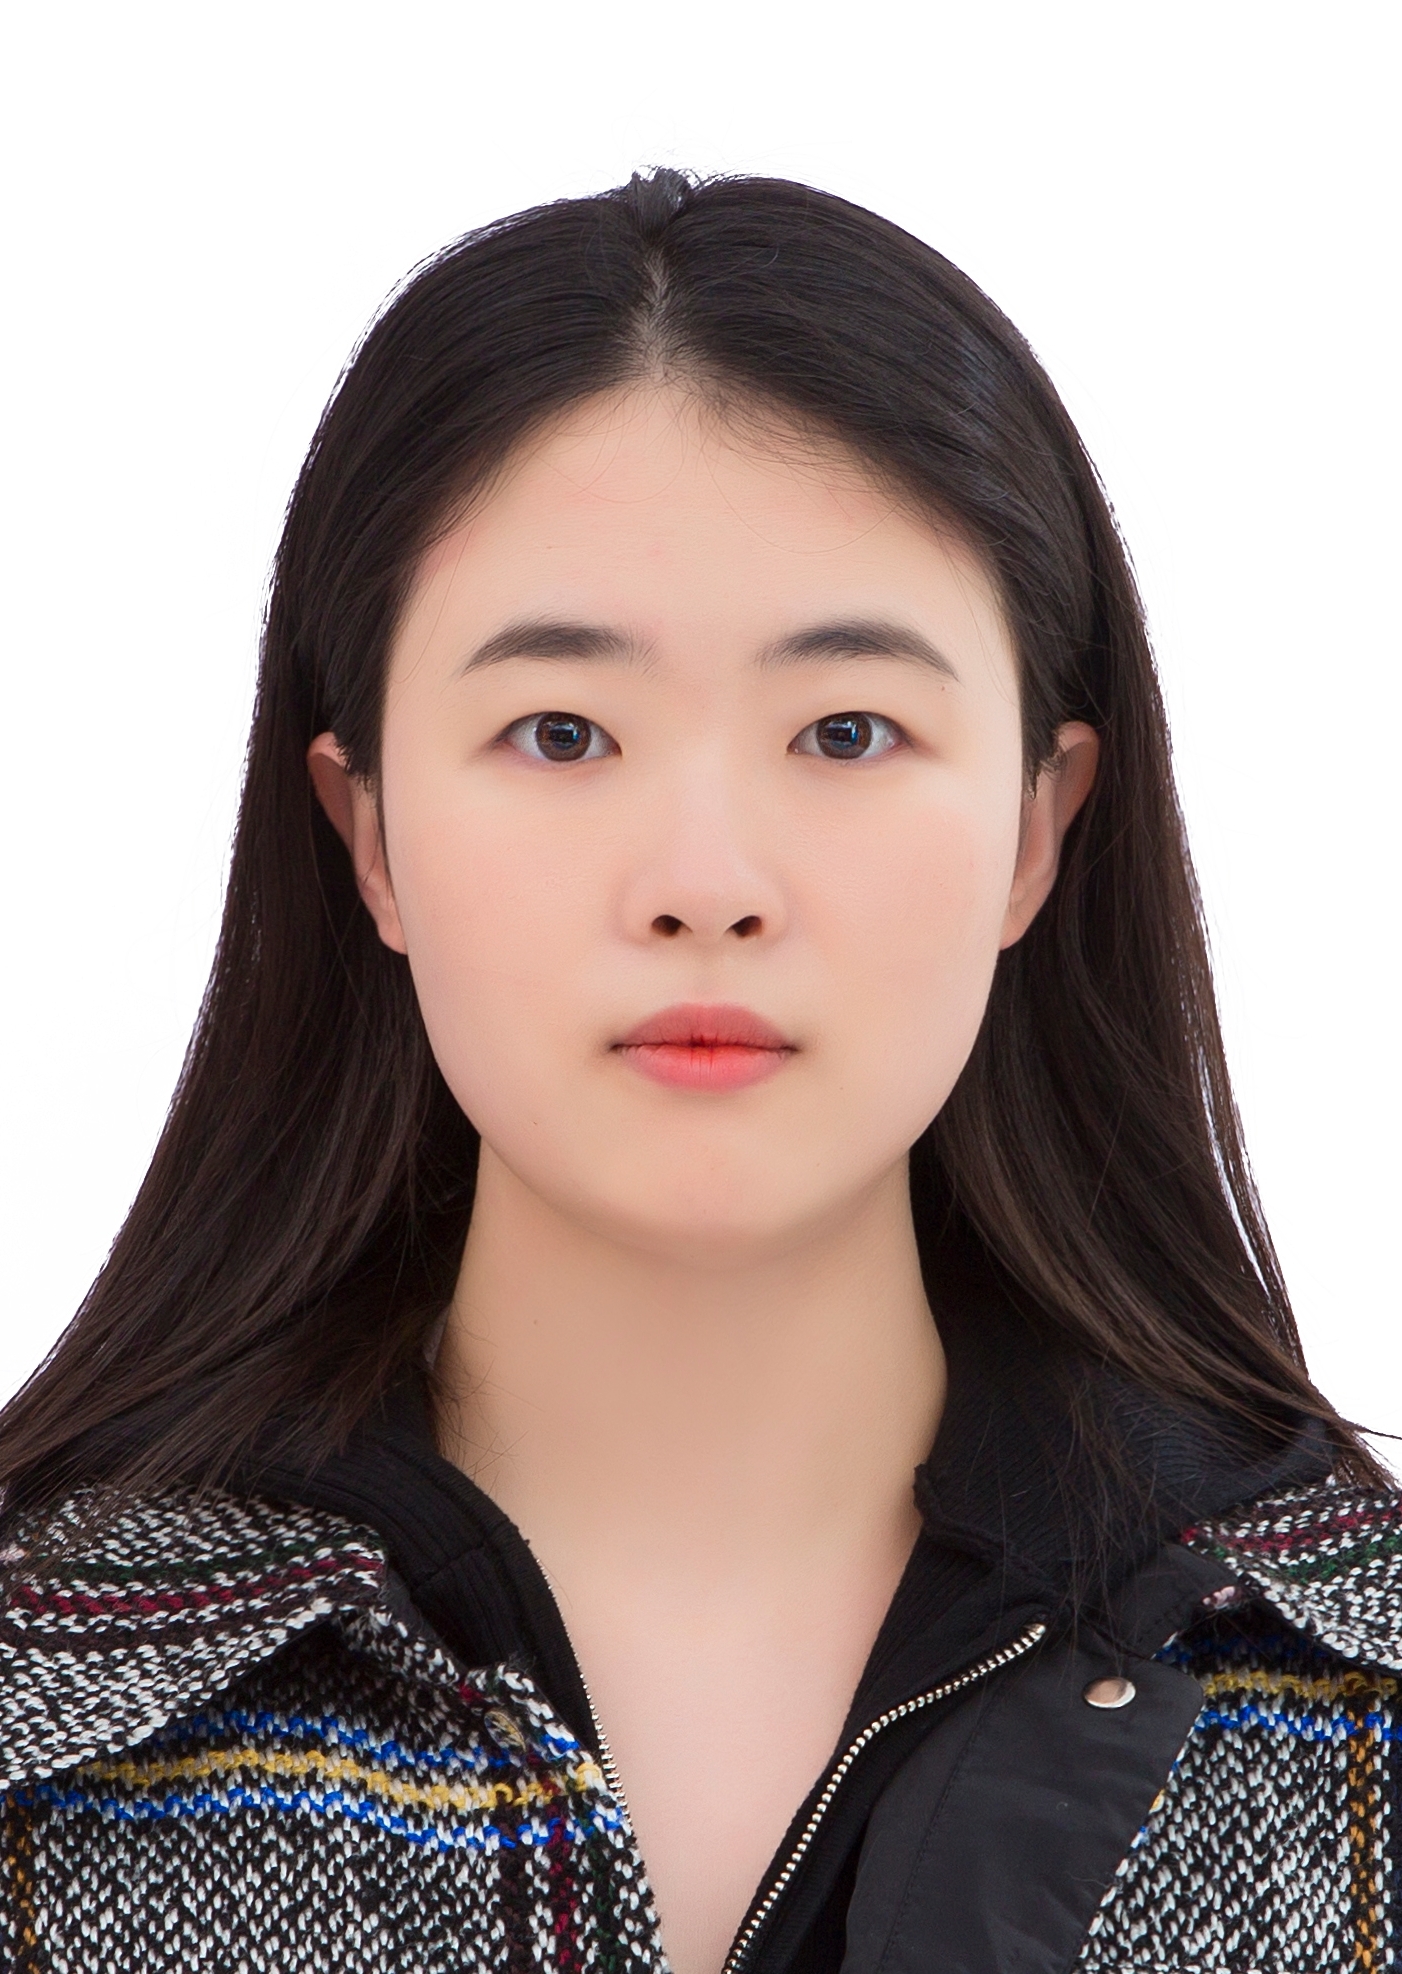 Miss WANG Qiaofei